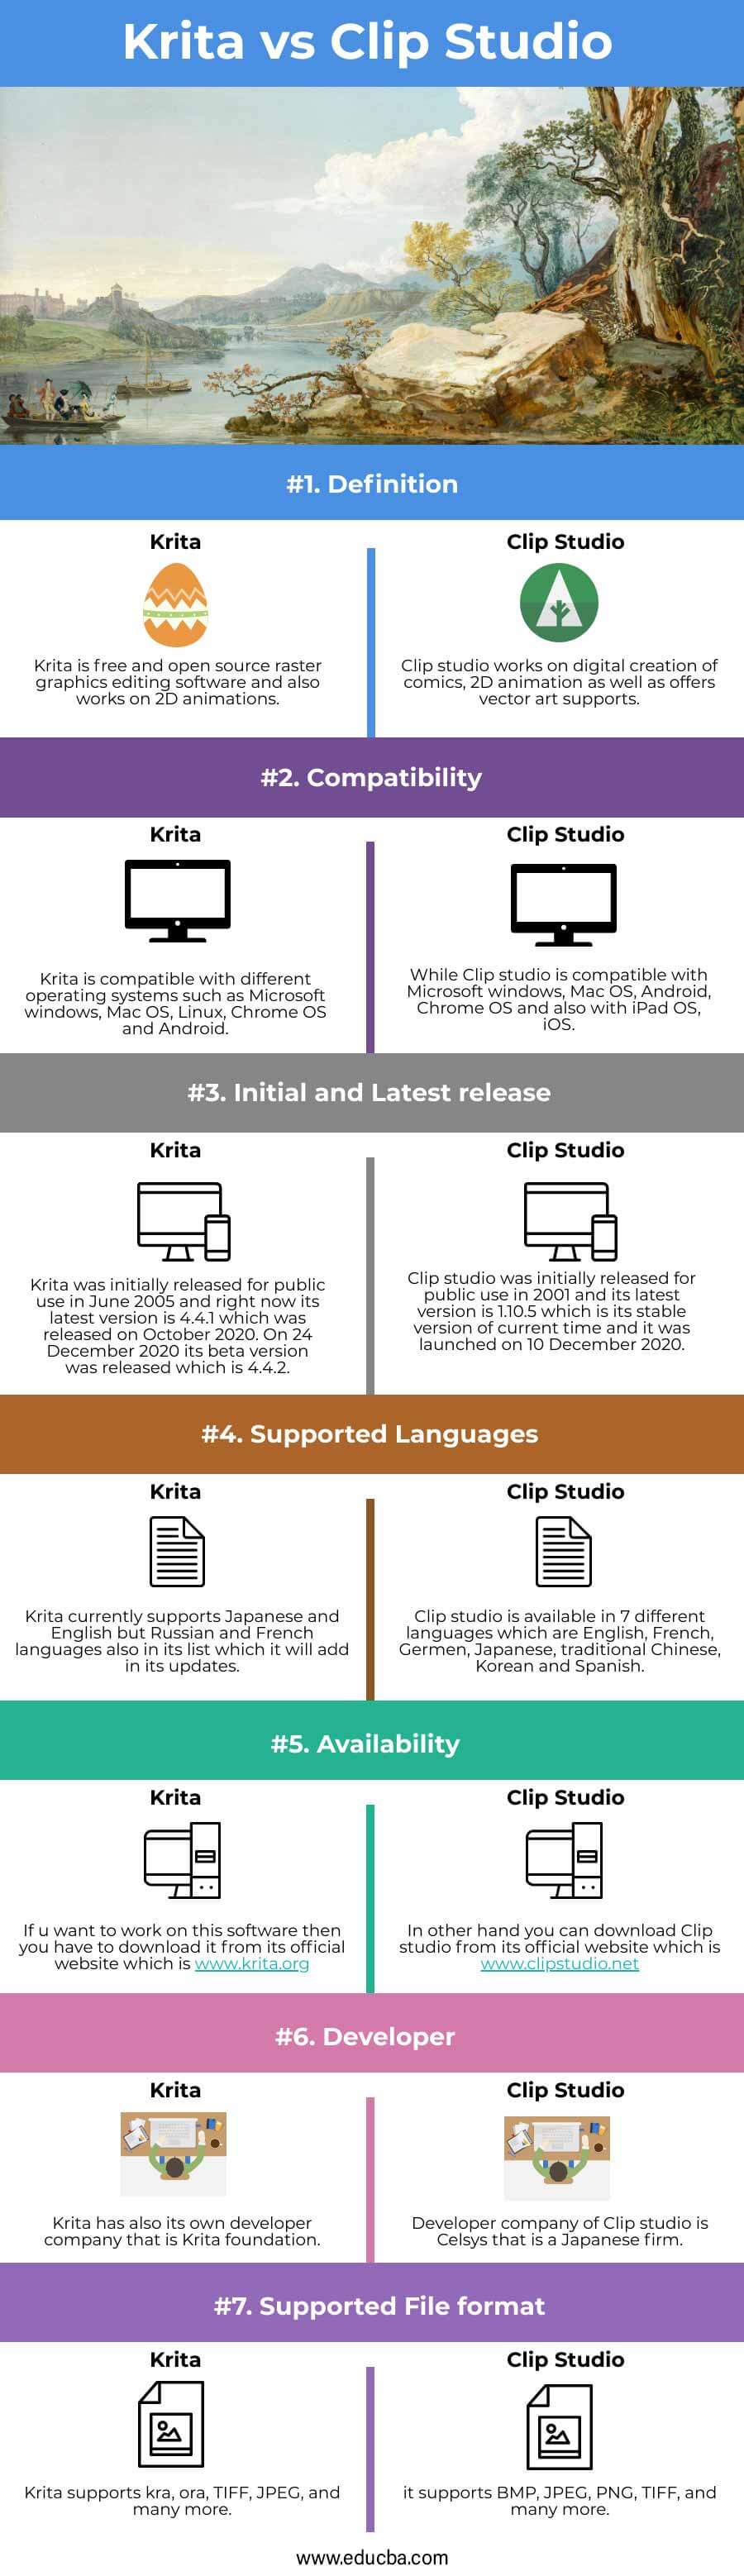 Krita-vs-Clip-Studio-info